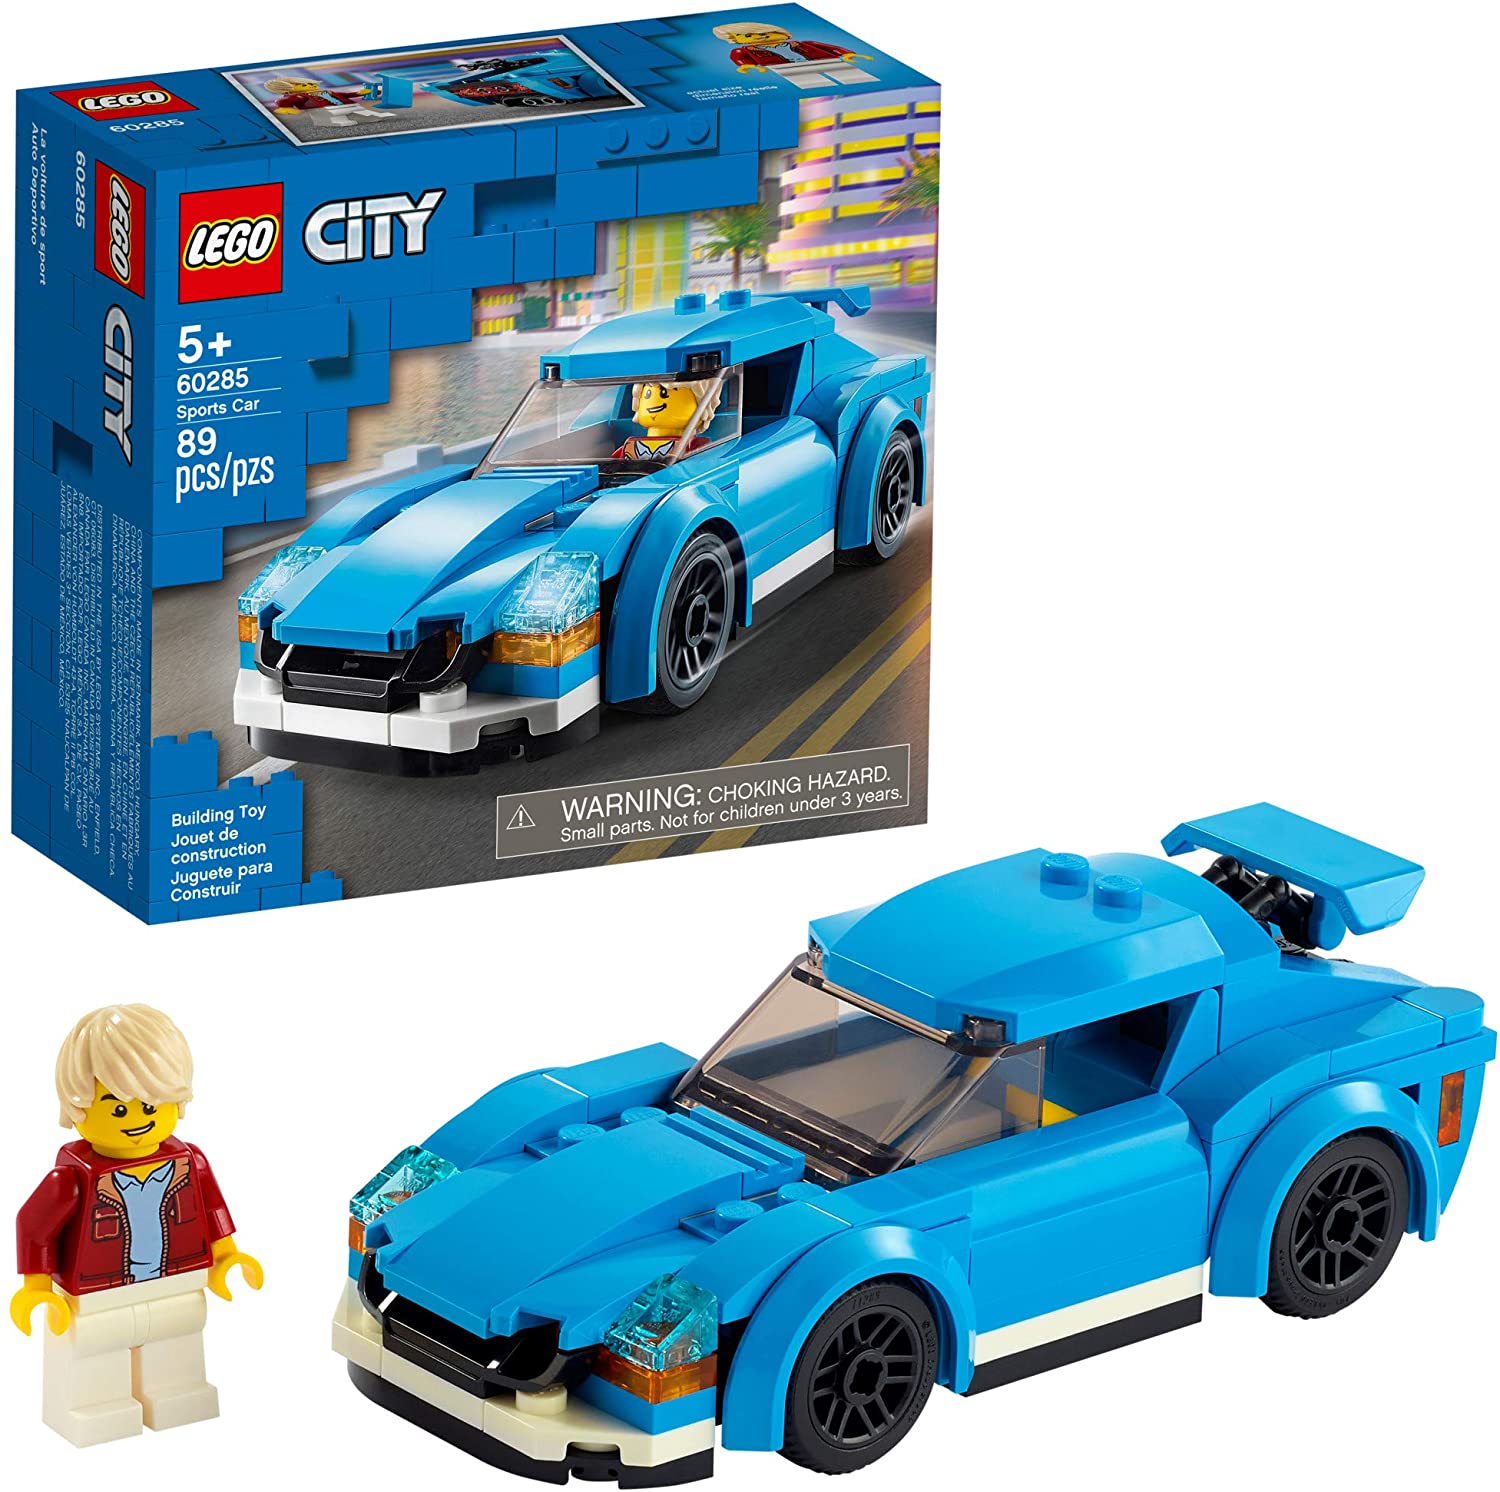 LEGO City Sports Car 